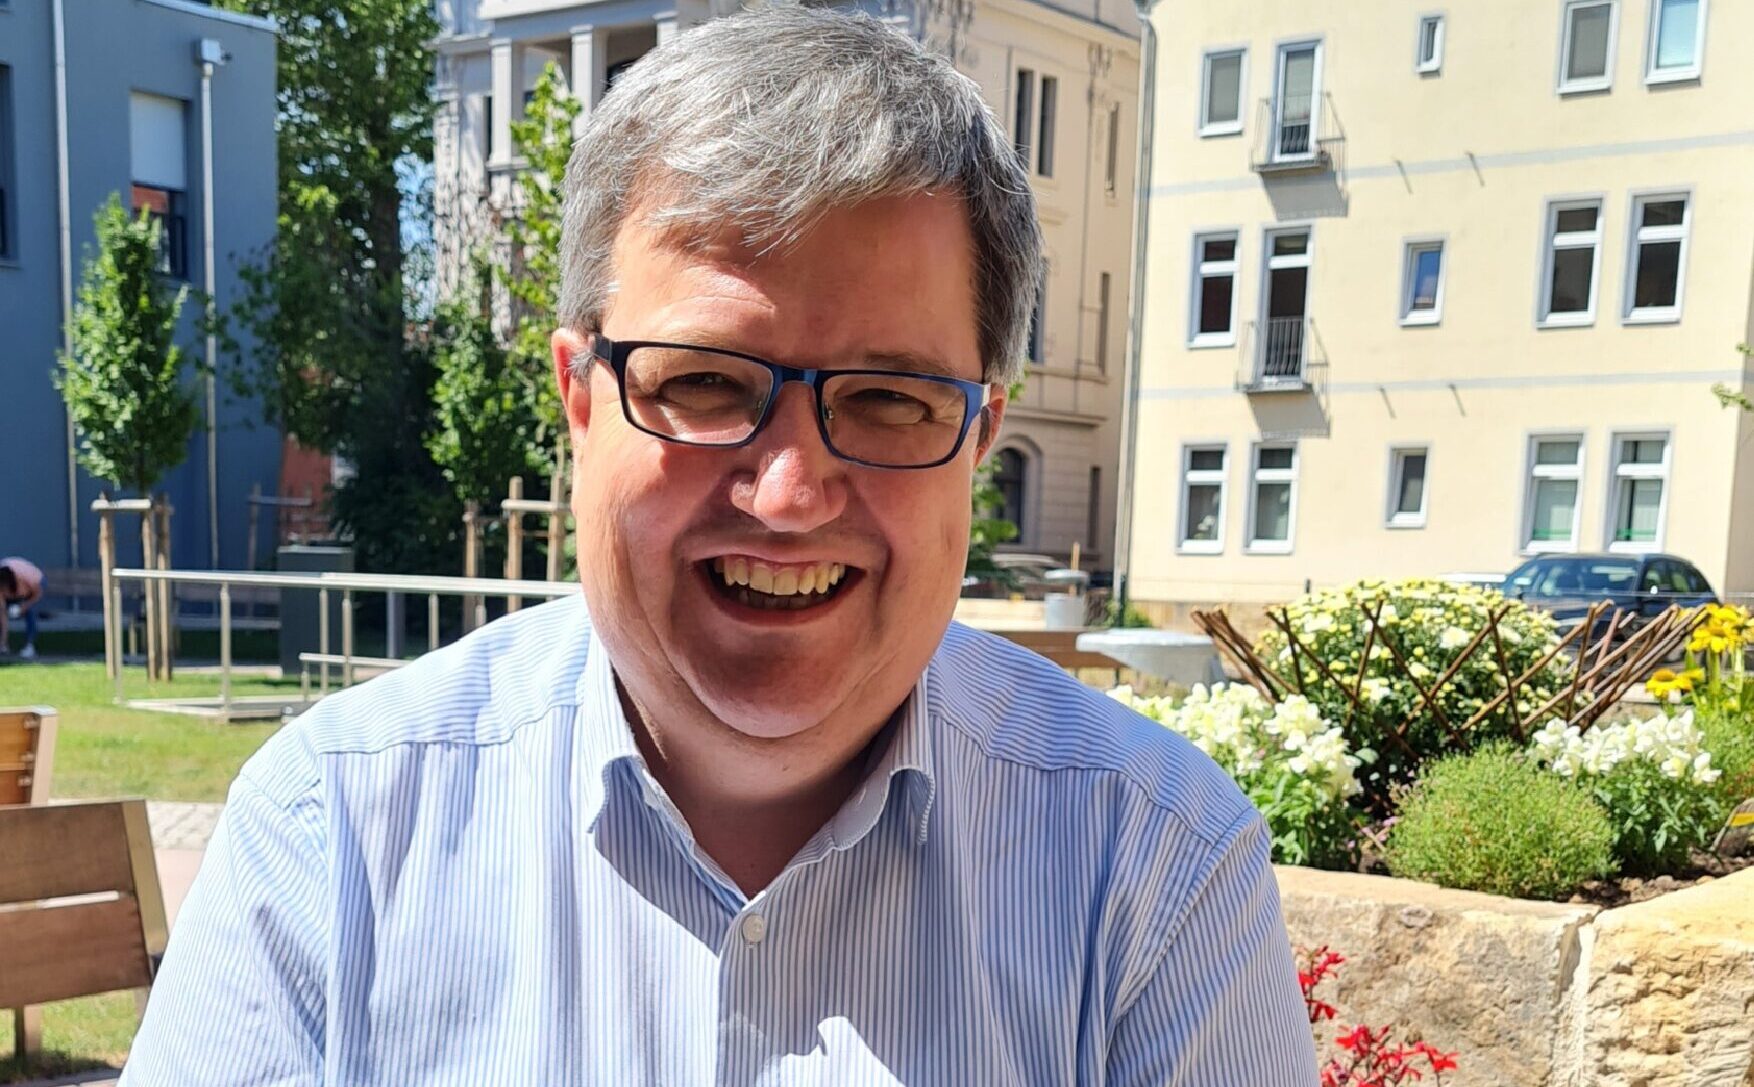 SCHÖNES LEBEN Gotha am Neumarkt stellt neuen Resident Manager vor: Lutz Lungwitz leitet das moderne Haus mit Servicequalität & Herzenswärme